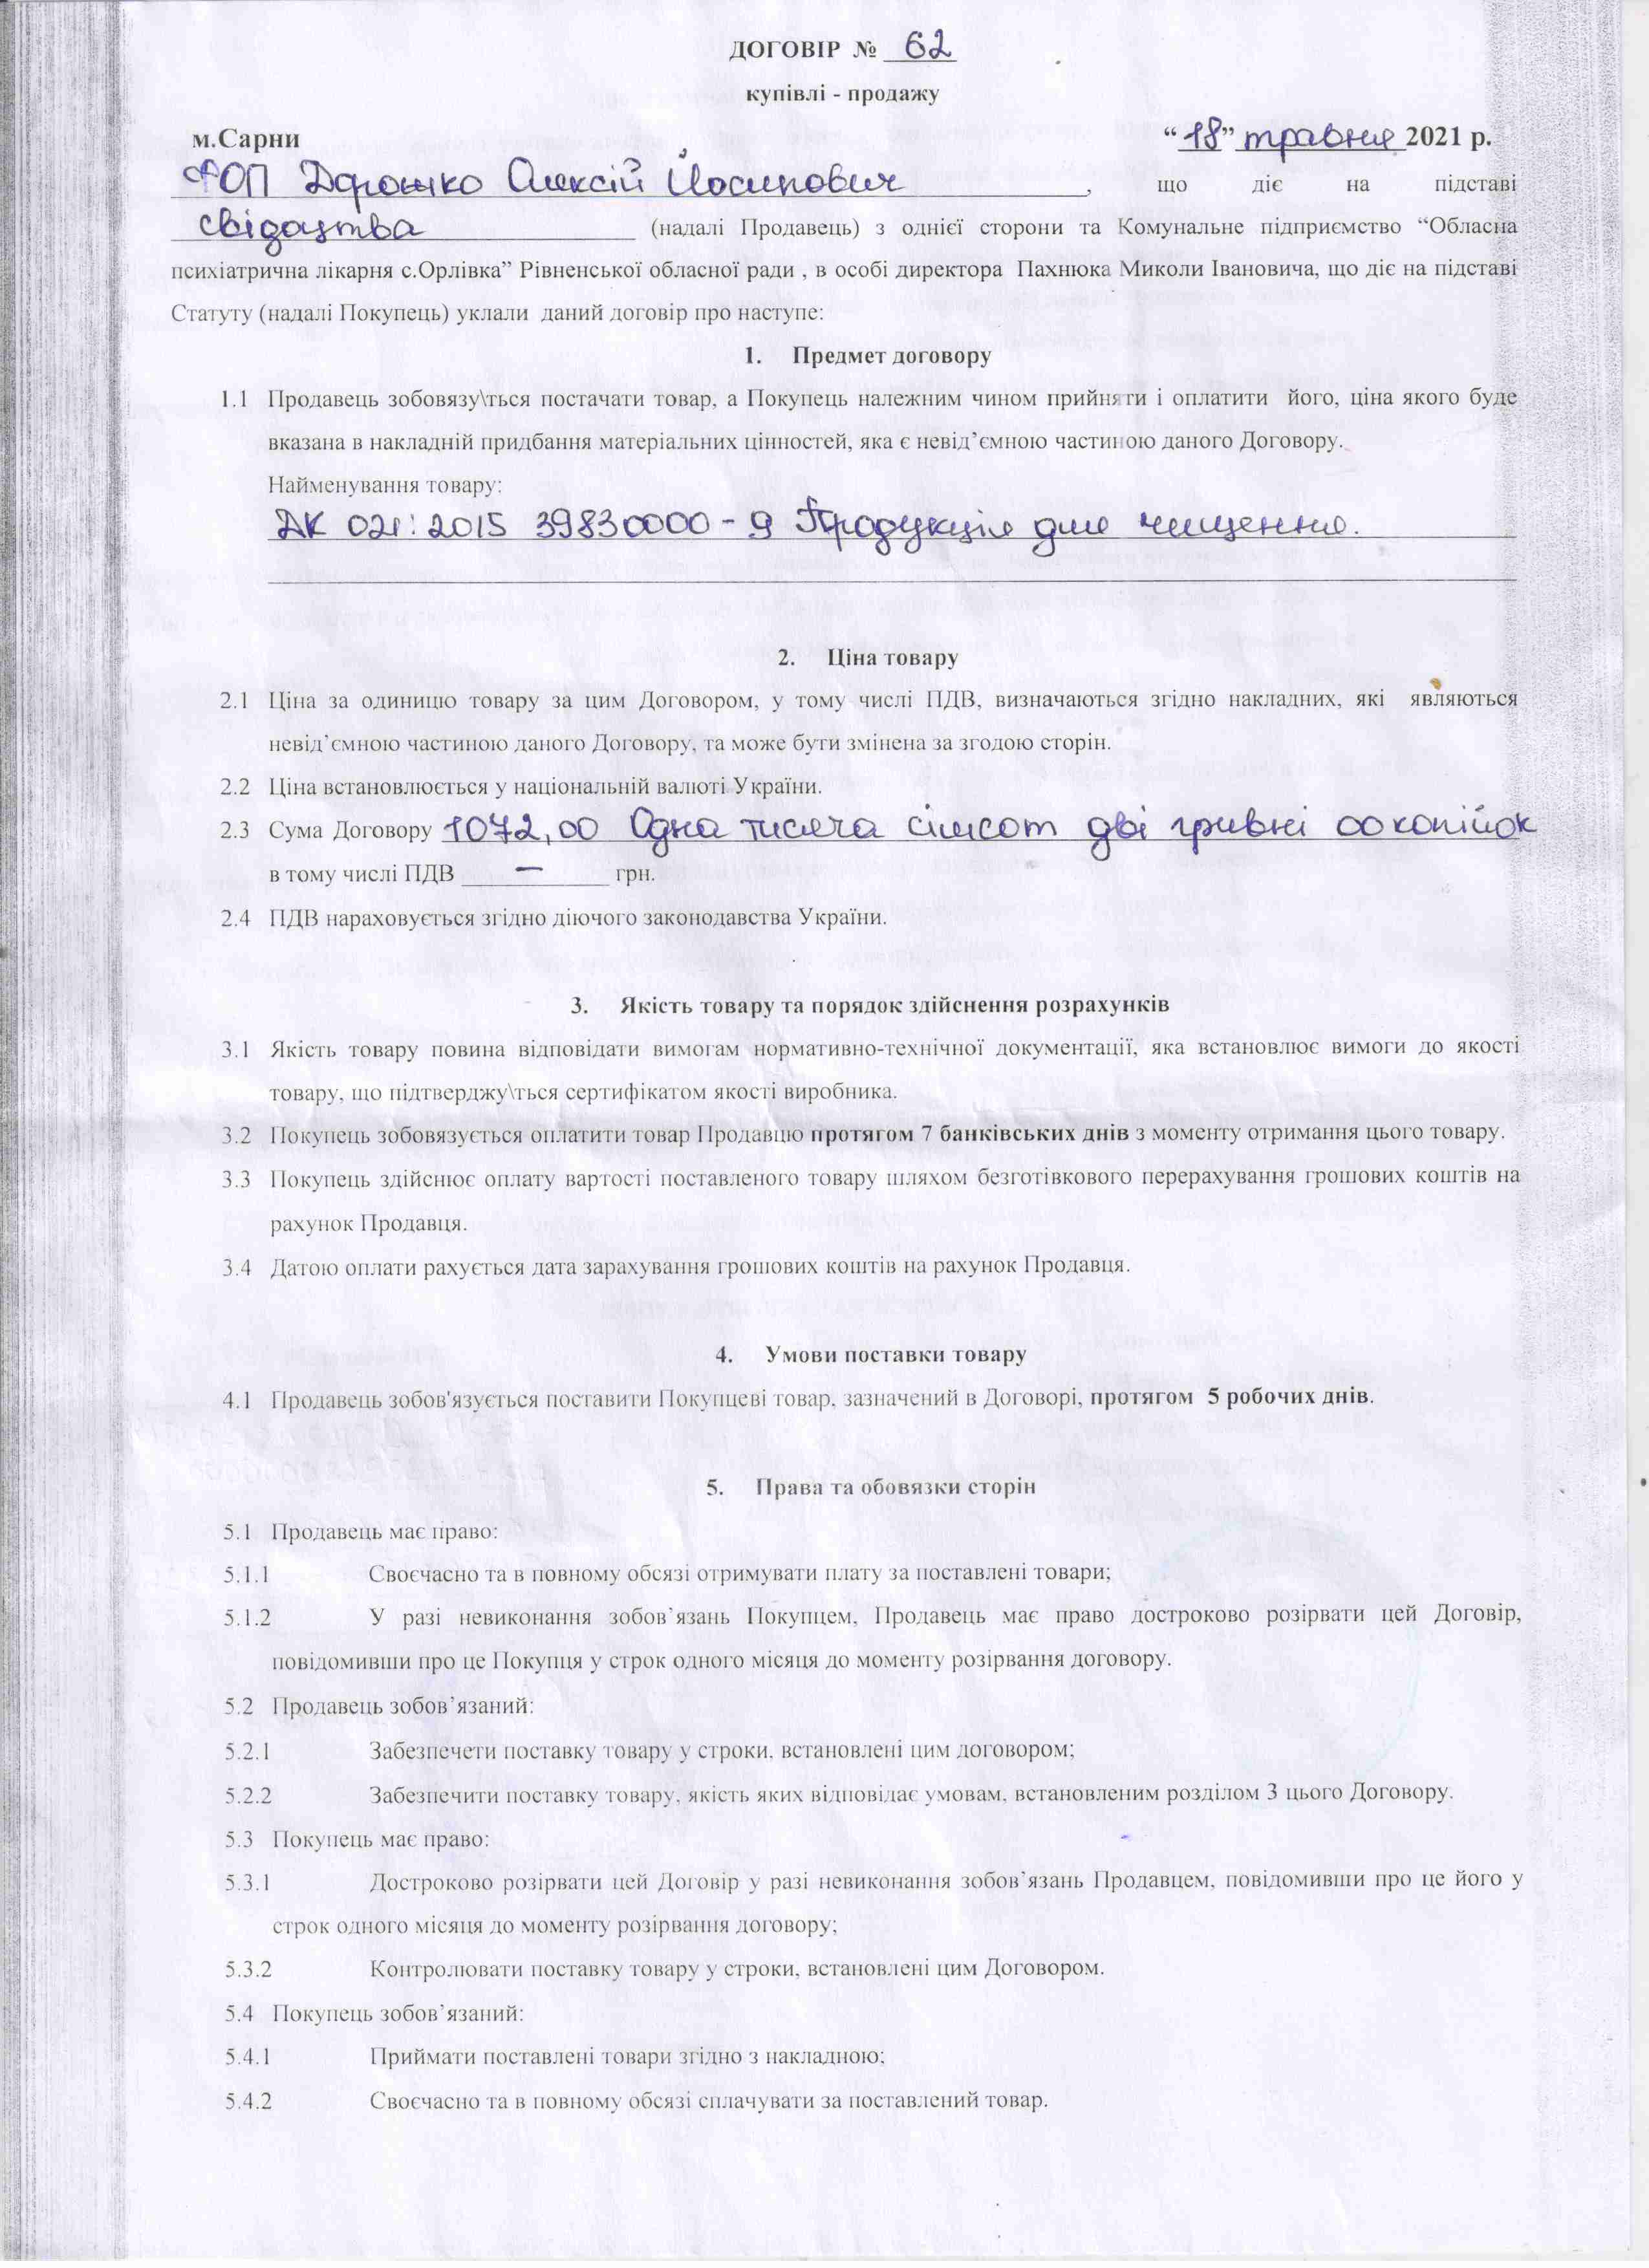 Договір №62 від 18.05.2021 р.